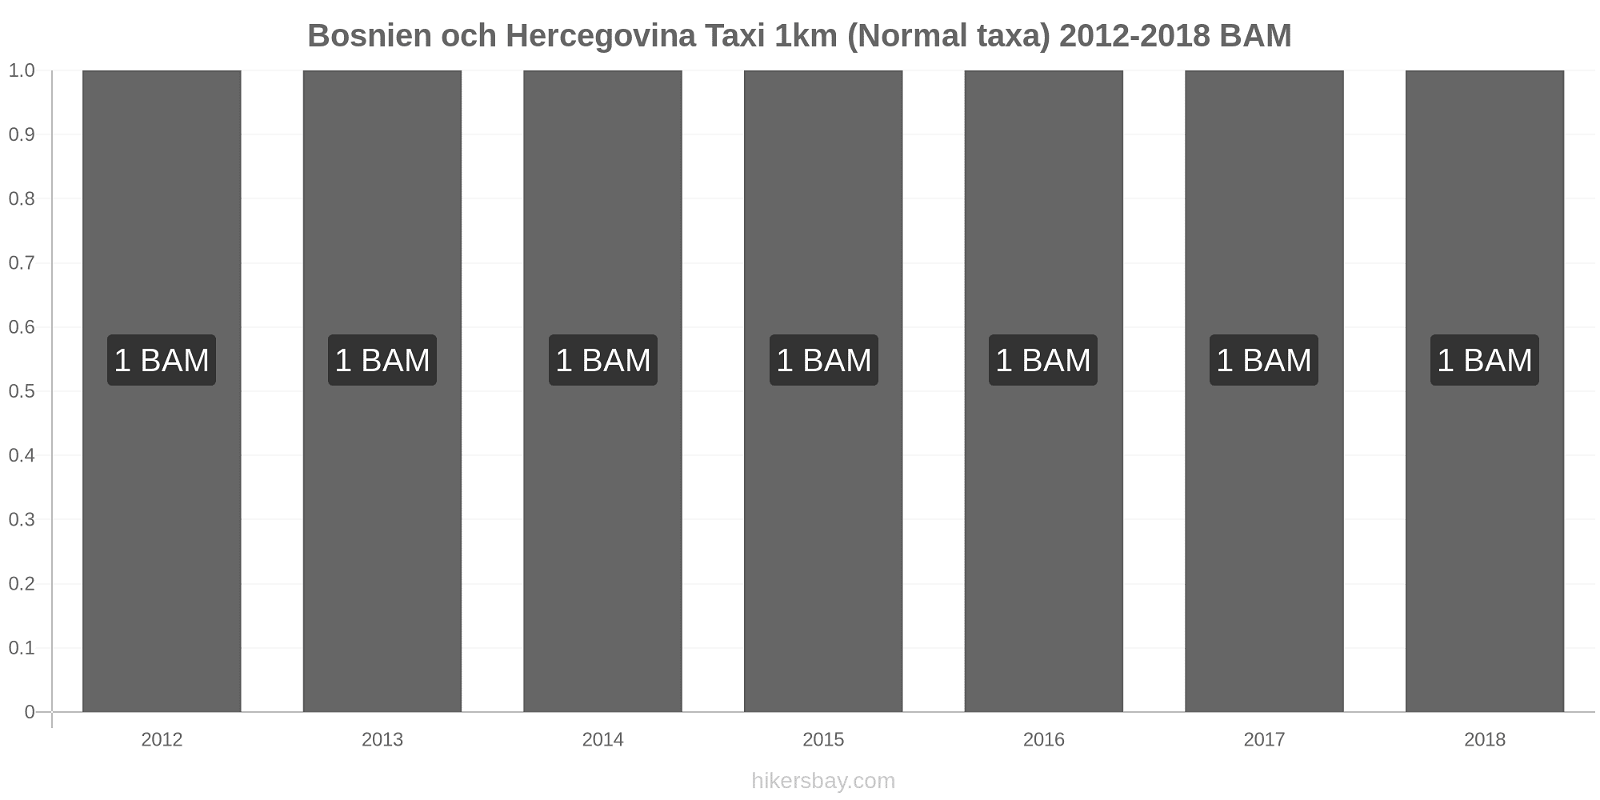 Bosnien och Hercegovina prisändringar Taxi 1km (Normal taxa) hikersbay.com